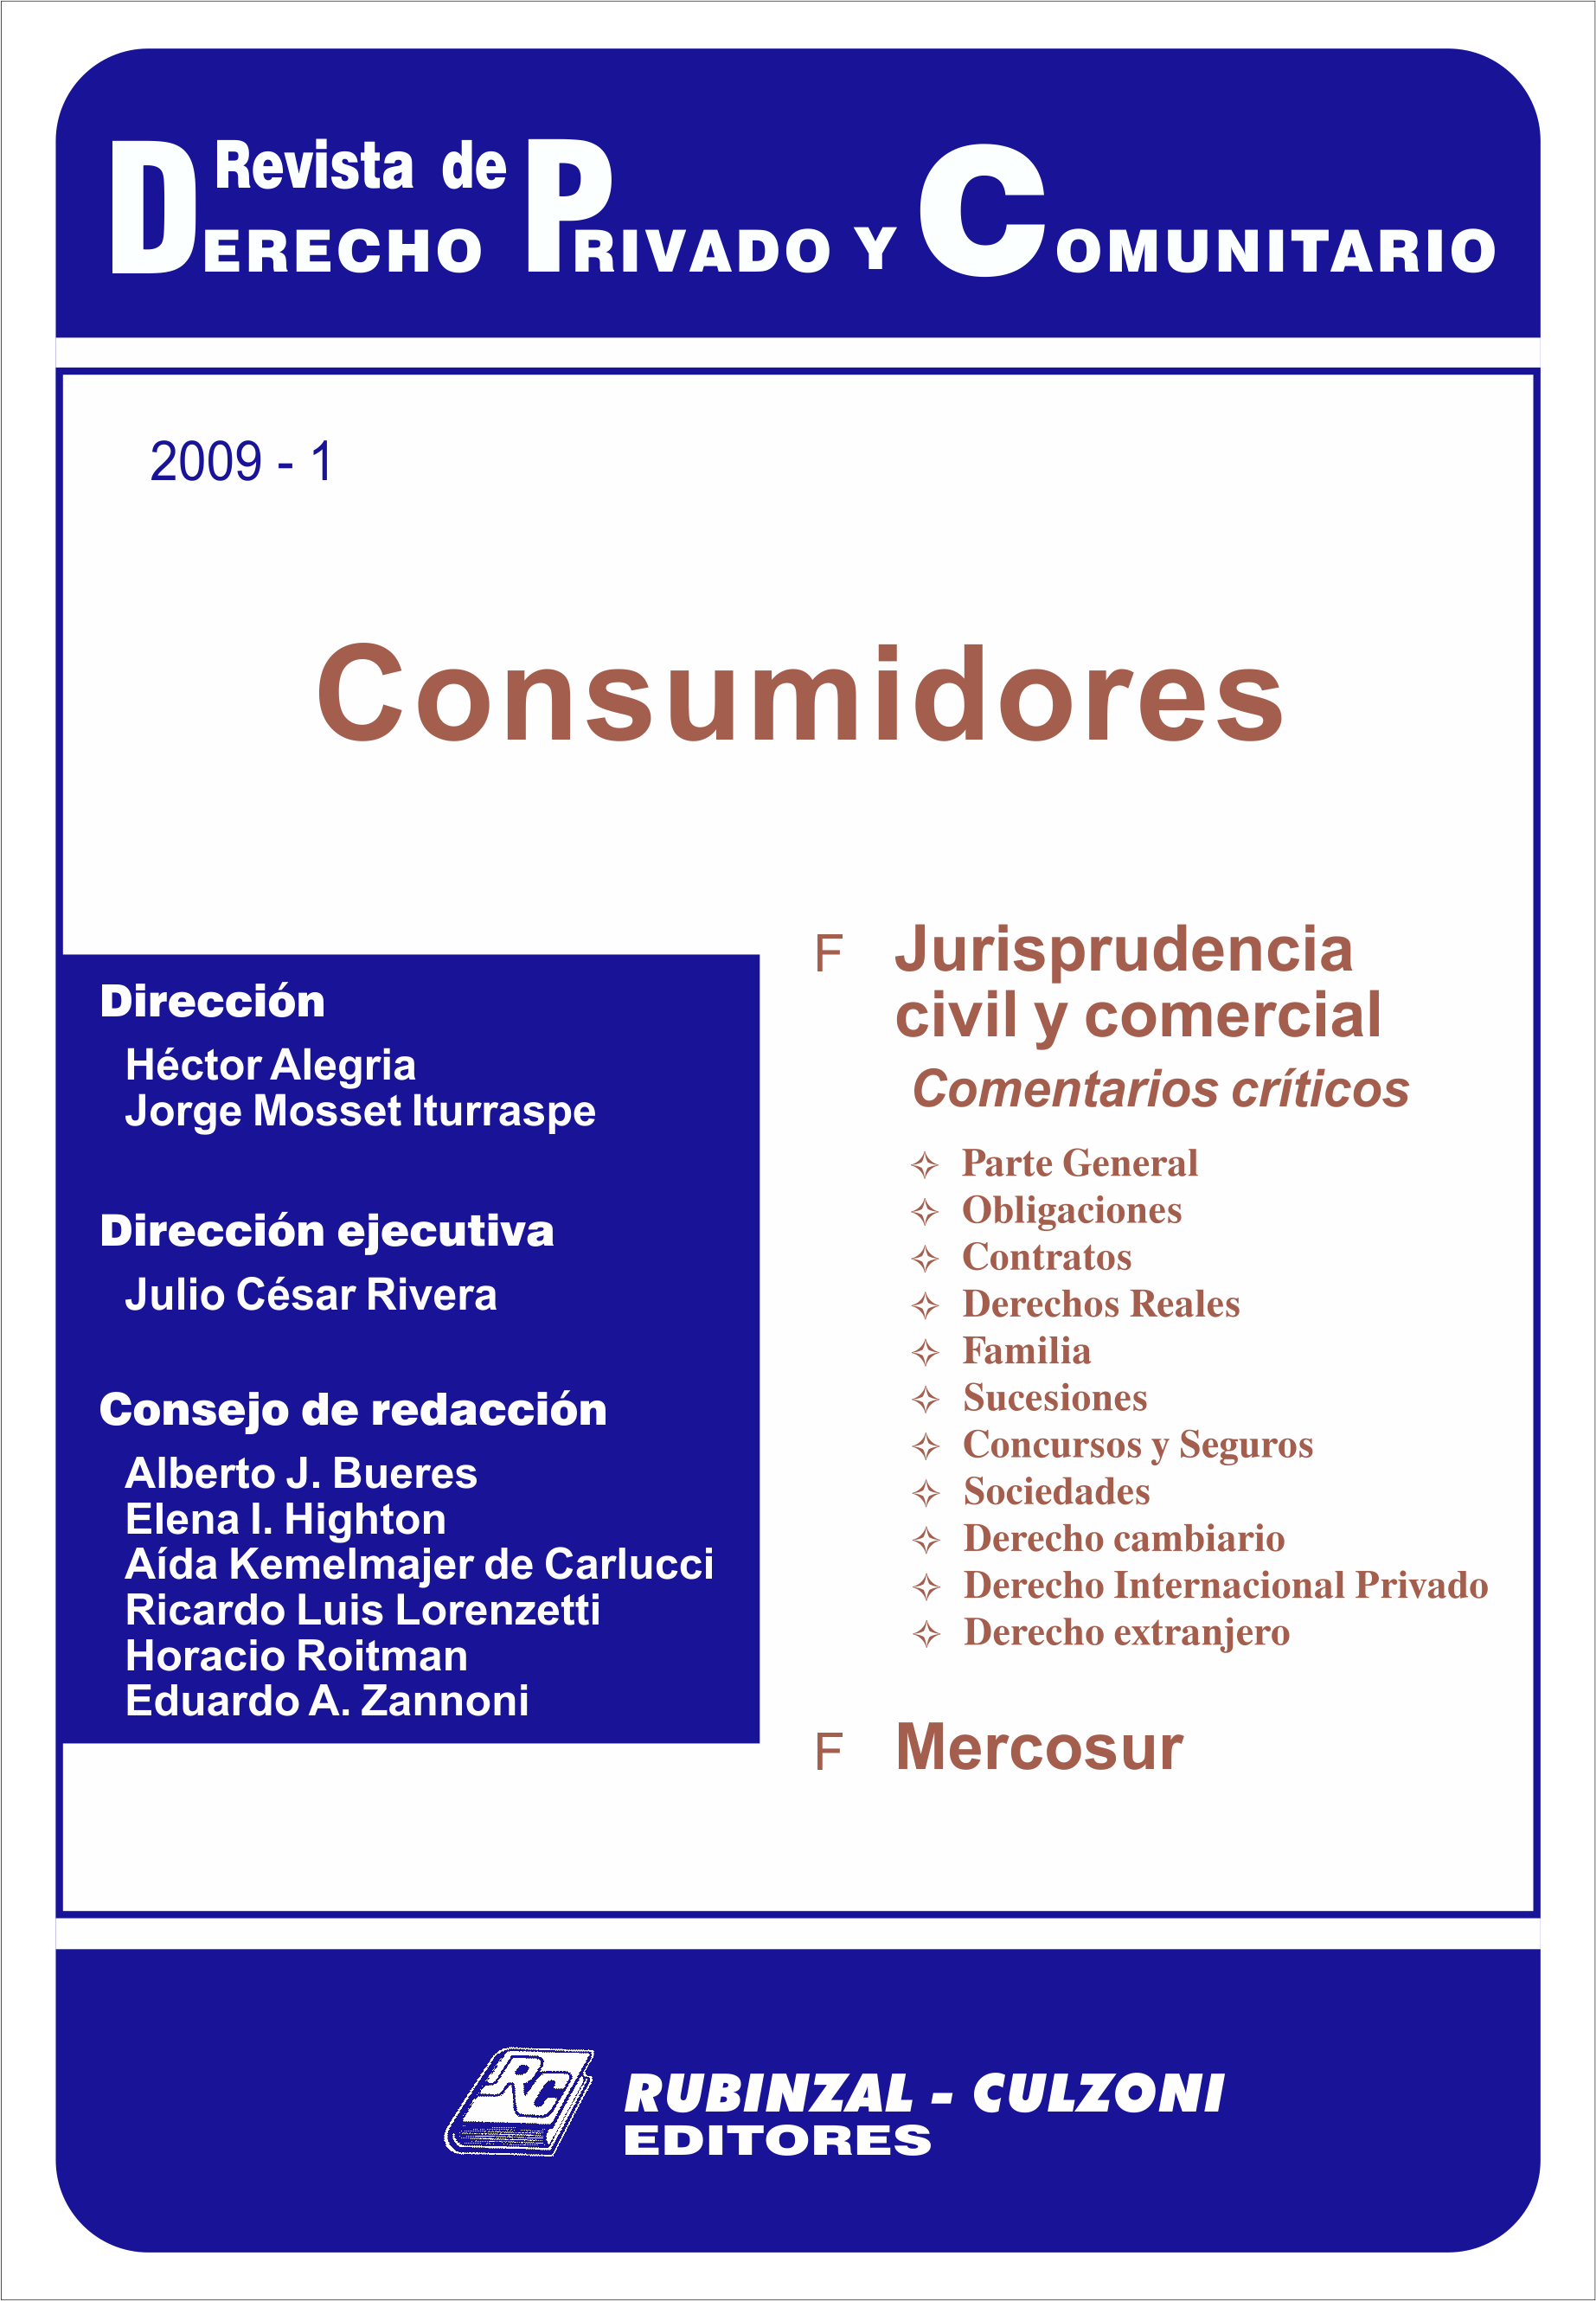 Revista de Derecho Privado y Comunitario - Consumidores.